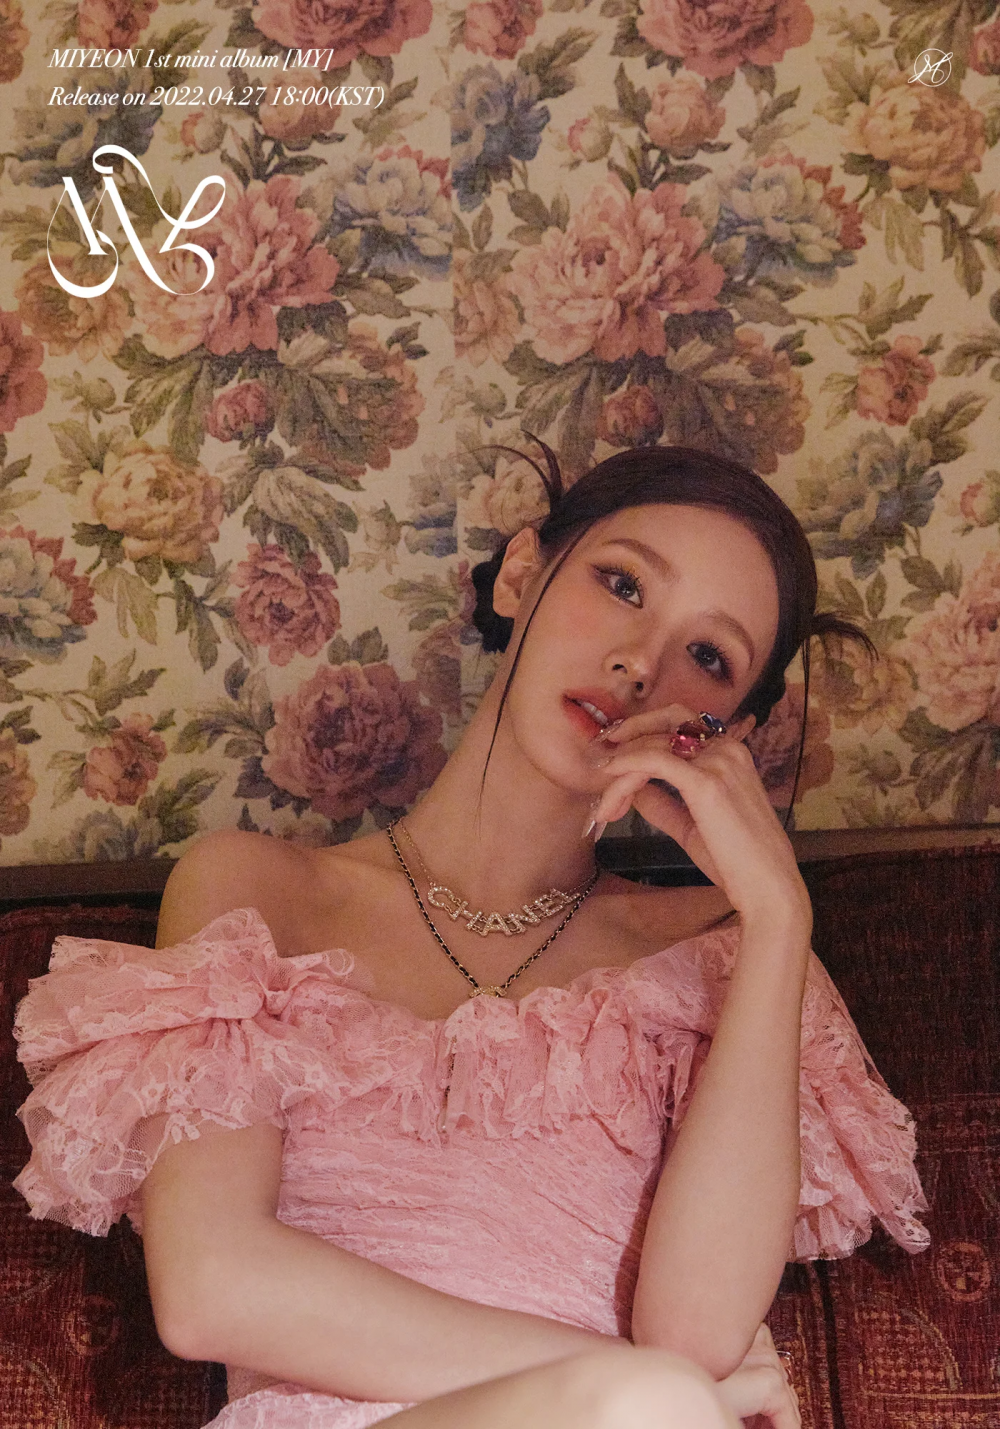 [Соло-дебют] Миён из (G)I-DLE мини-альбом «MY»: музыкальный клип